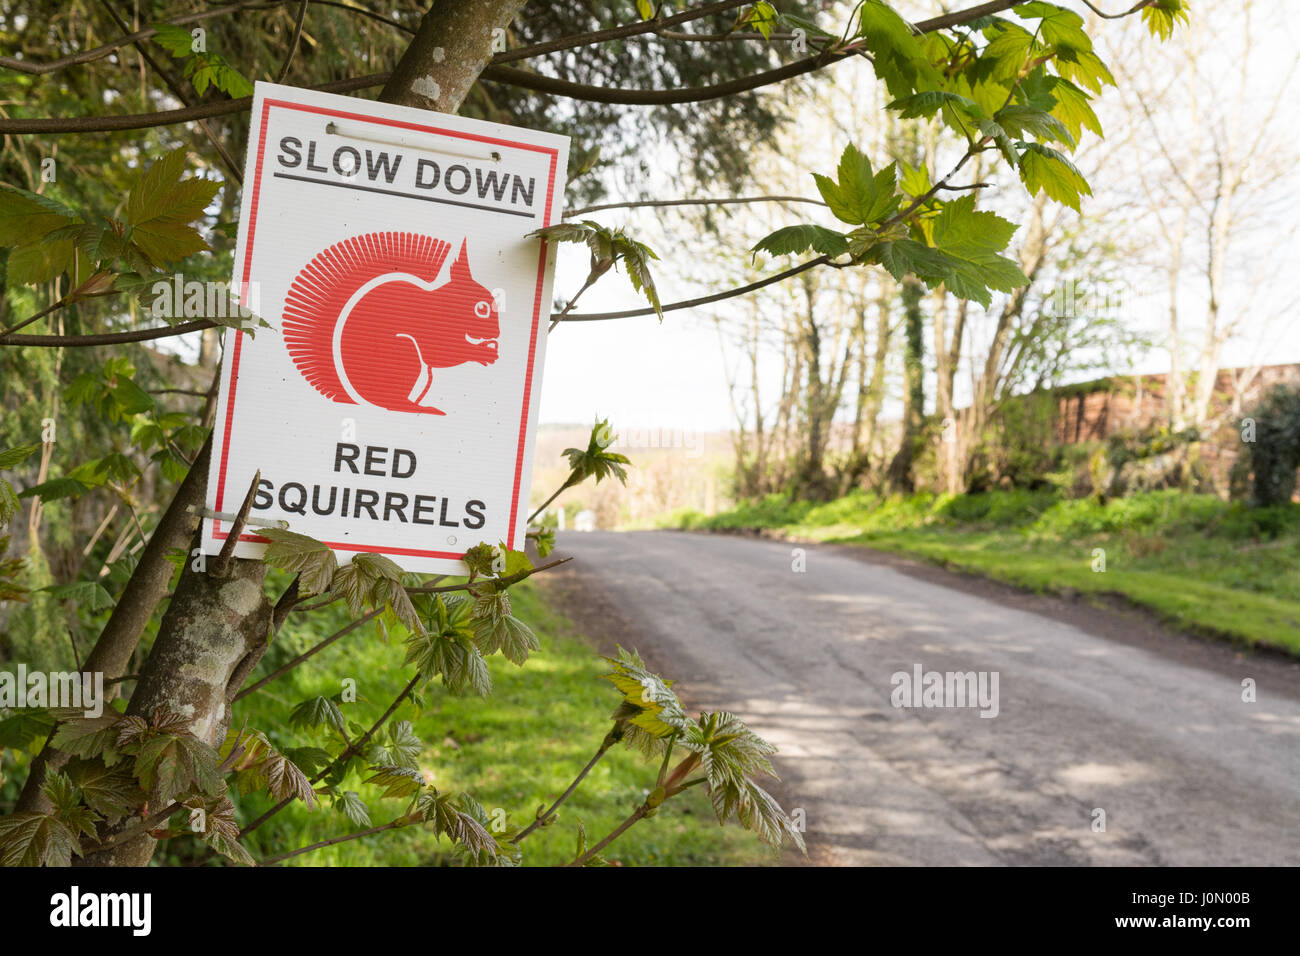 Gli scoiattoli rossi cartello segnaletico di rallentare, Lake District, England, Regno Unito Foto Stock